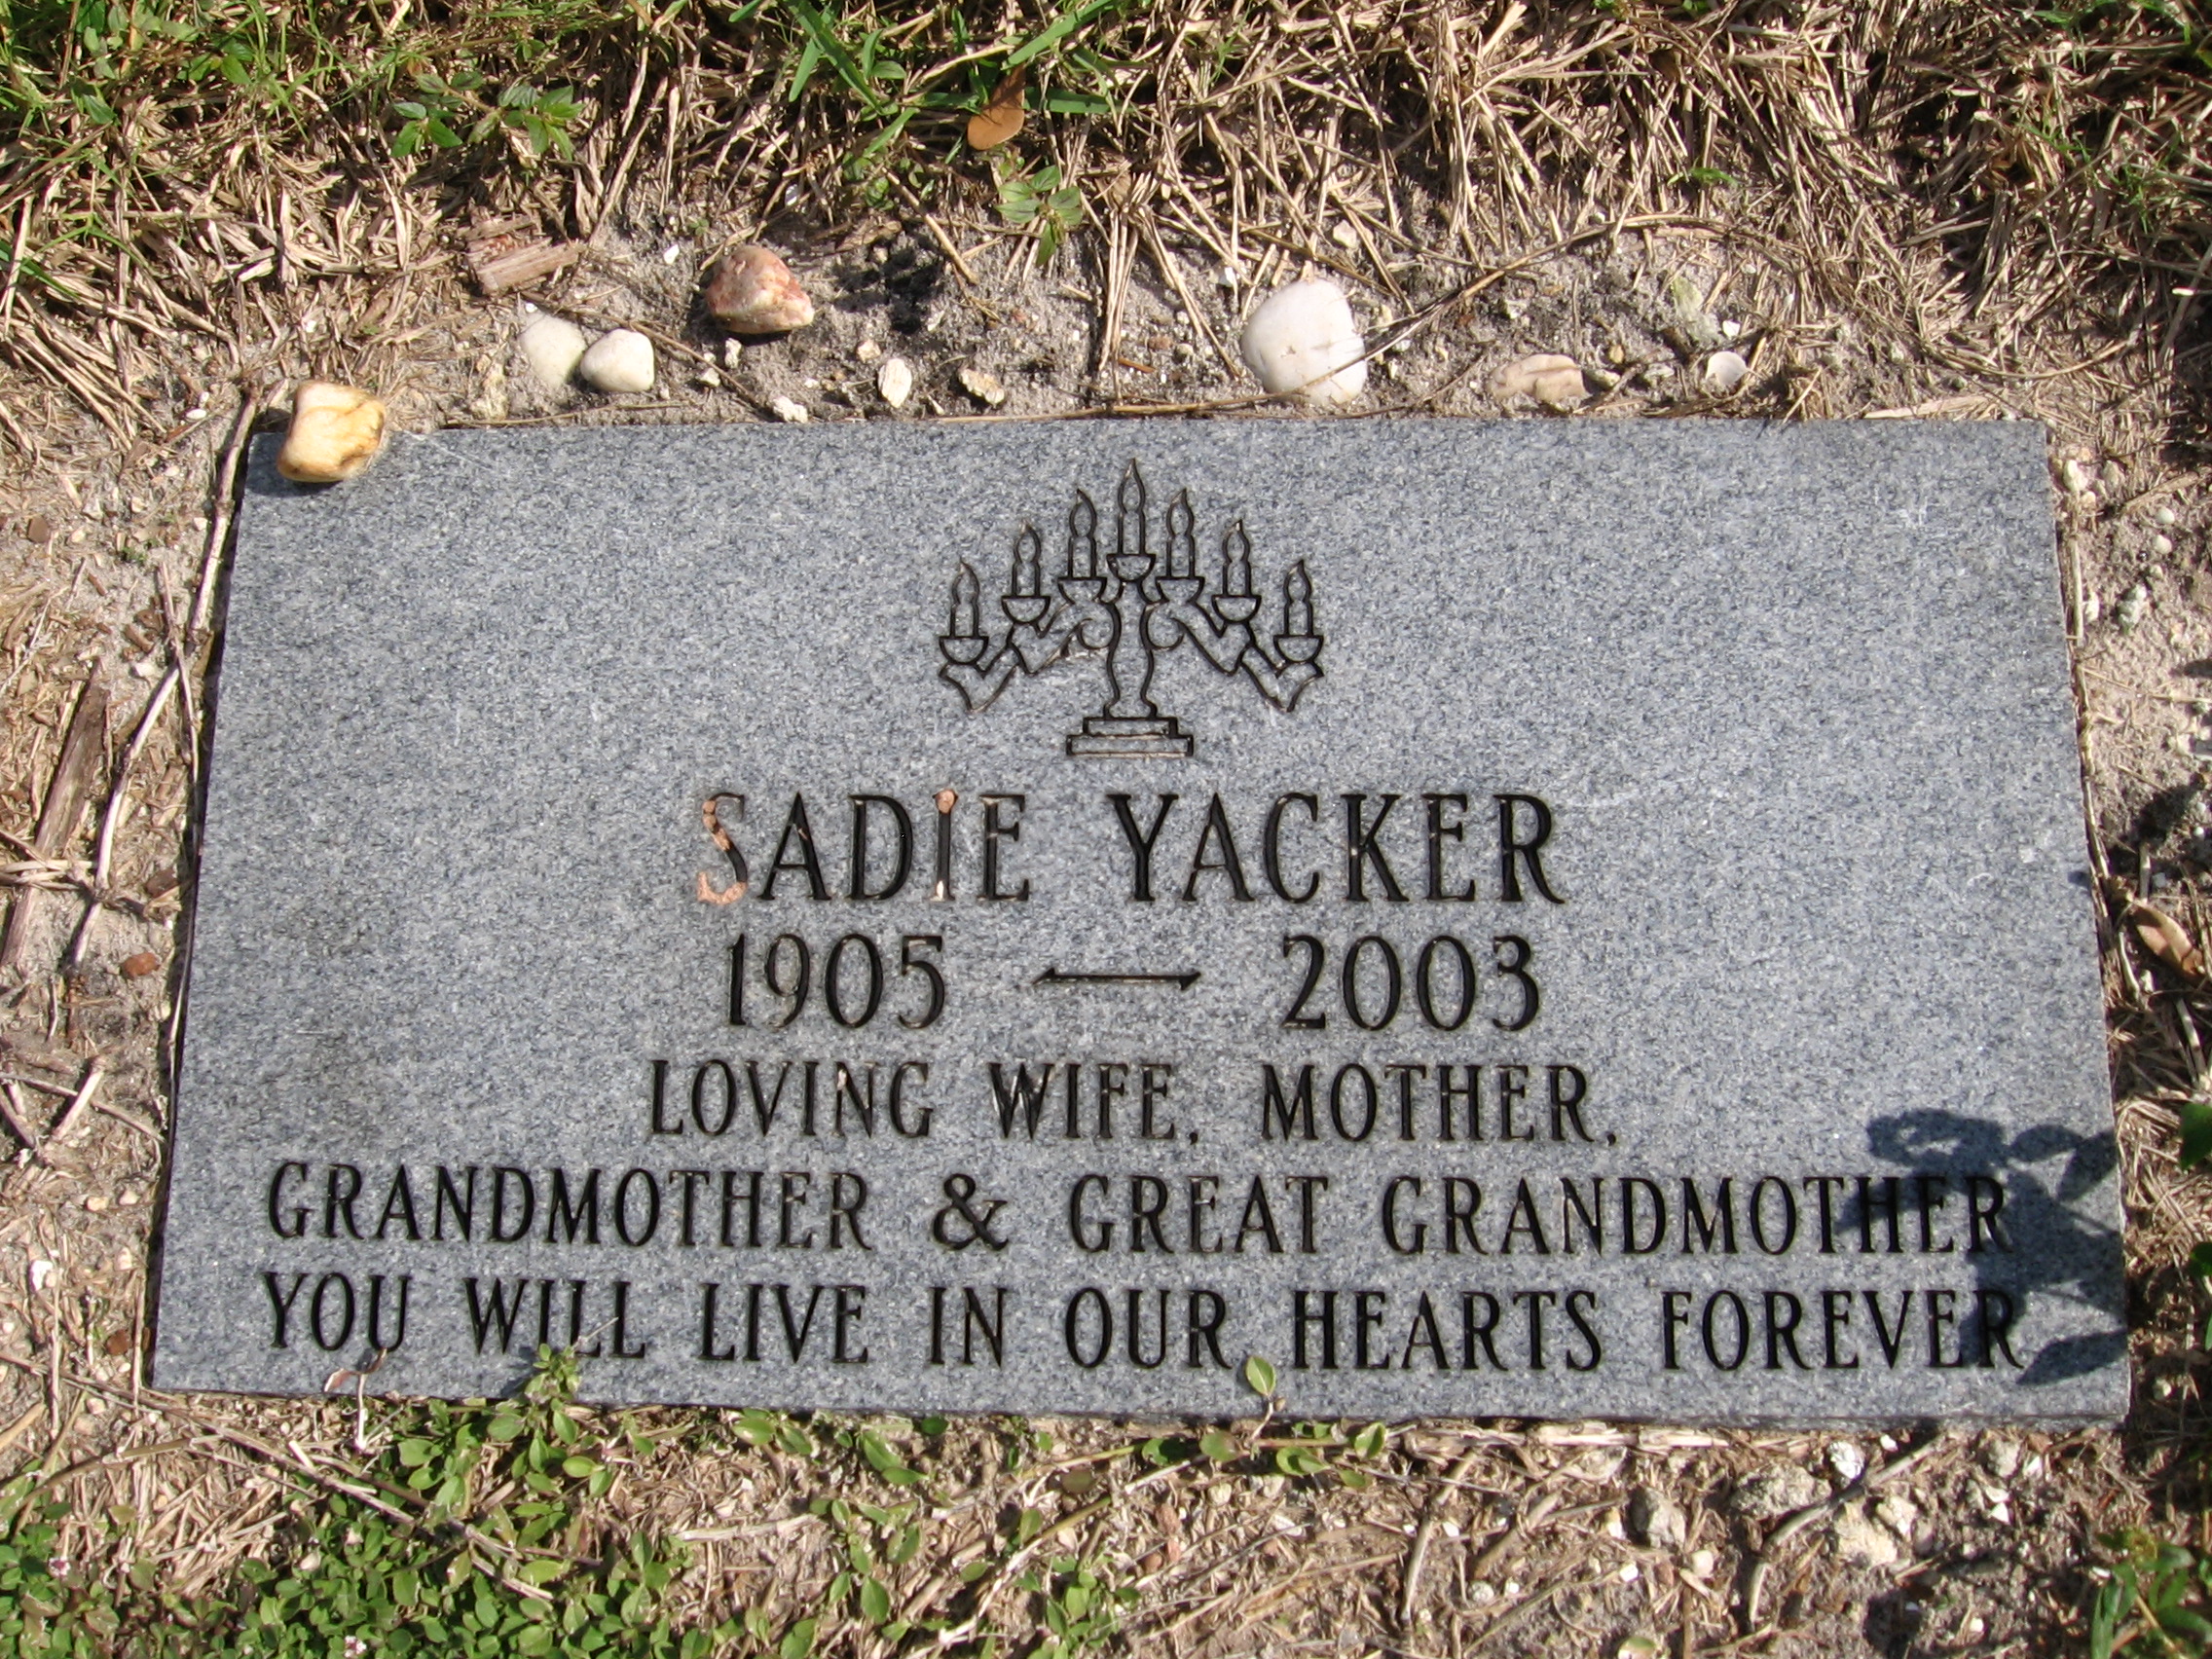 Sadie Yacker